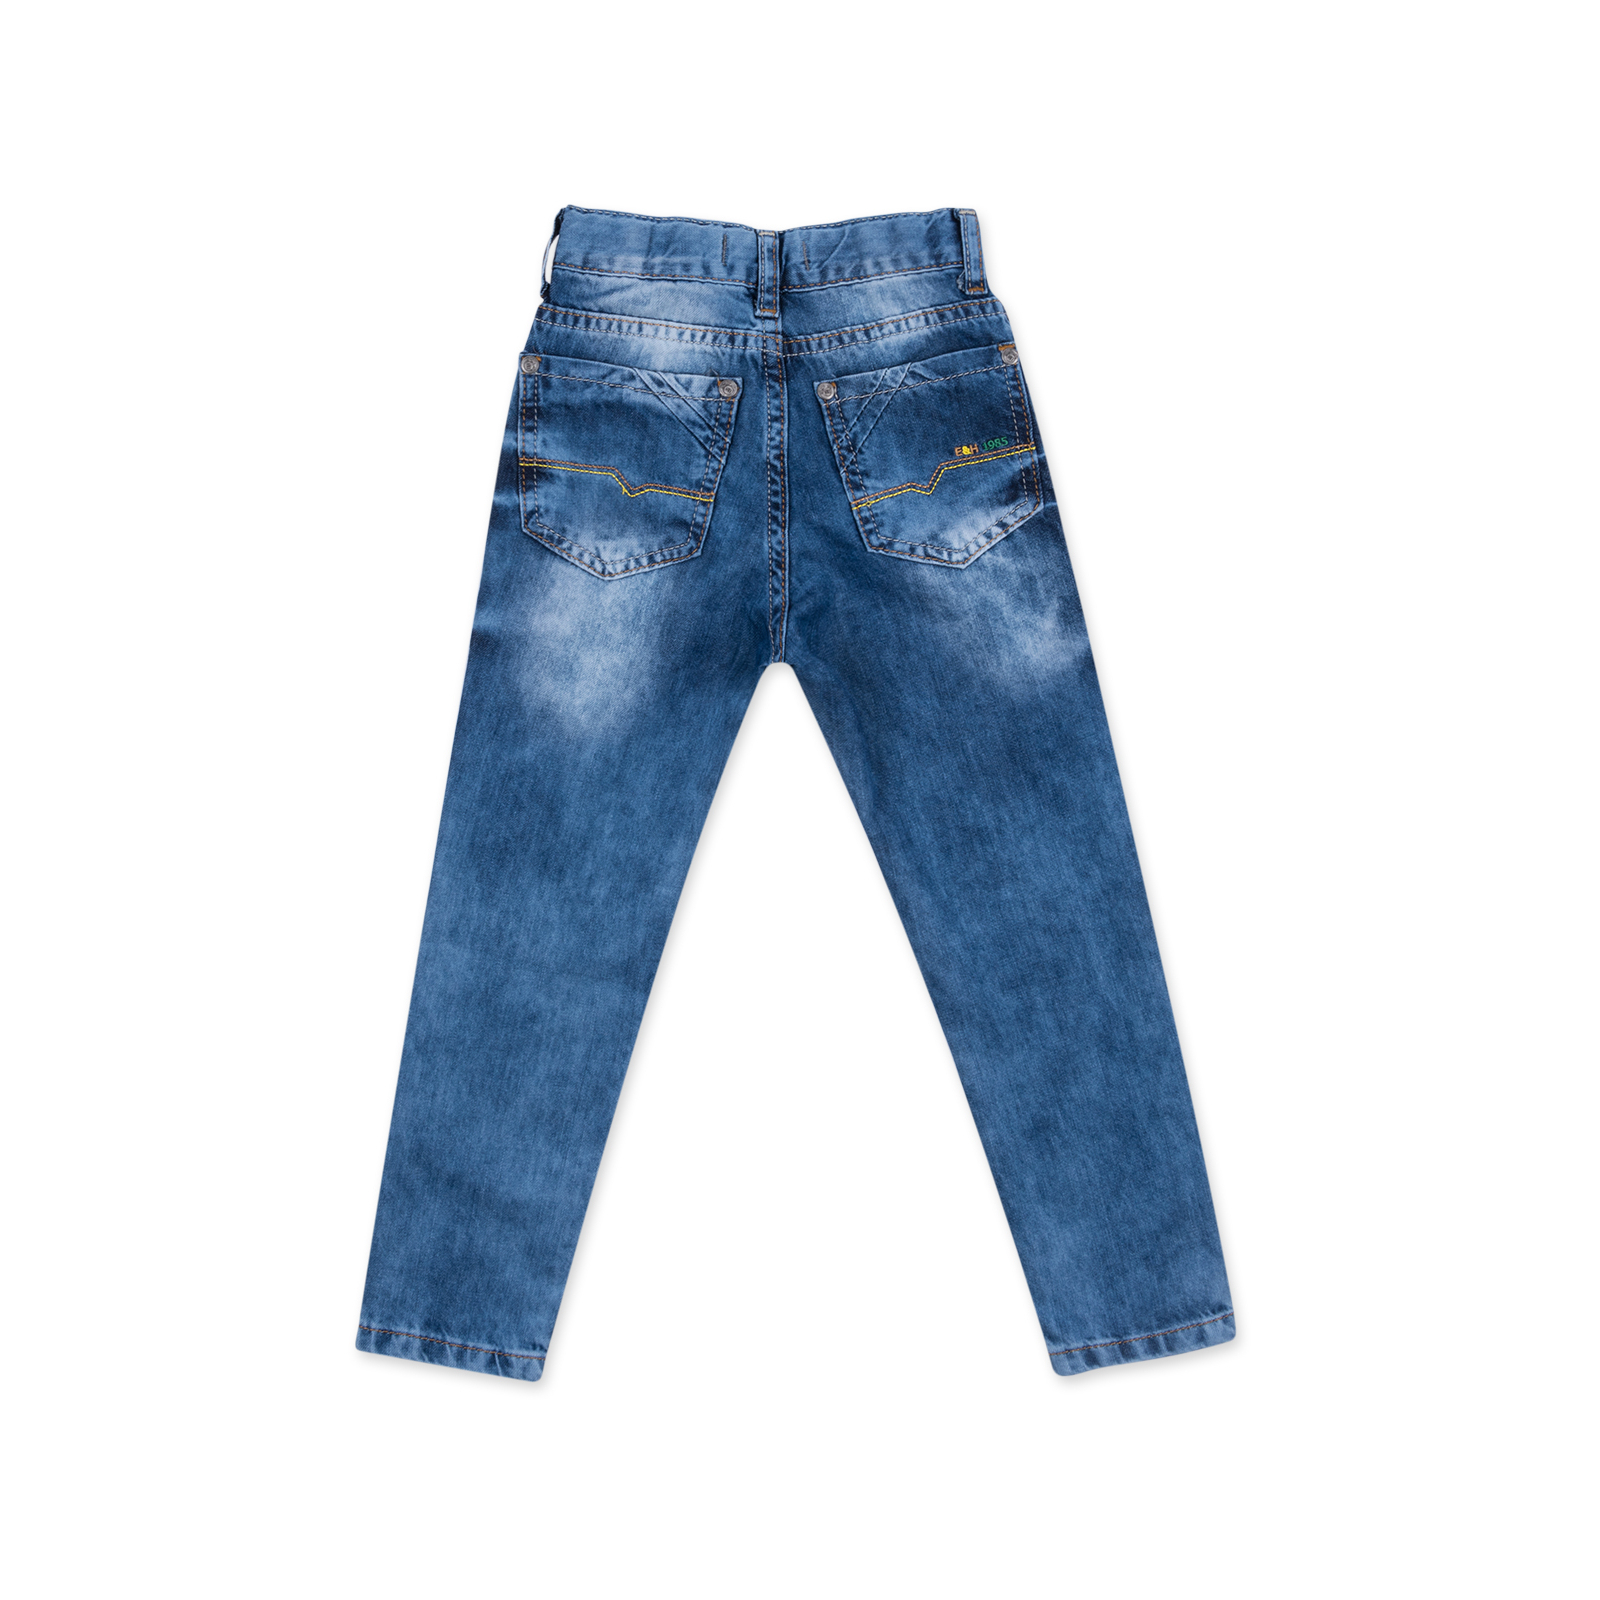 Джинсы Breeze с потертостями (20072-98B-jeans) изображение 2